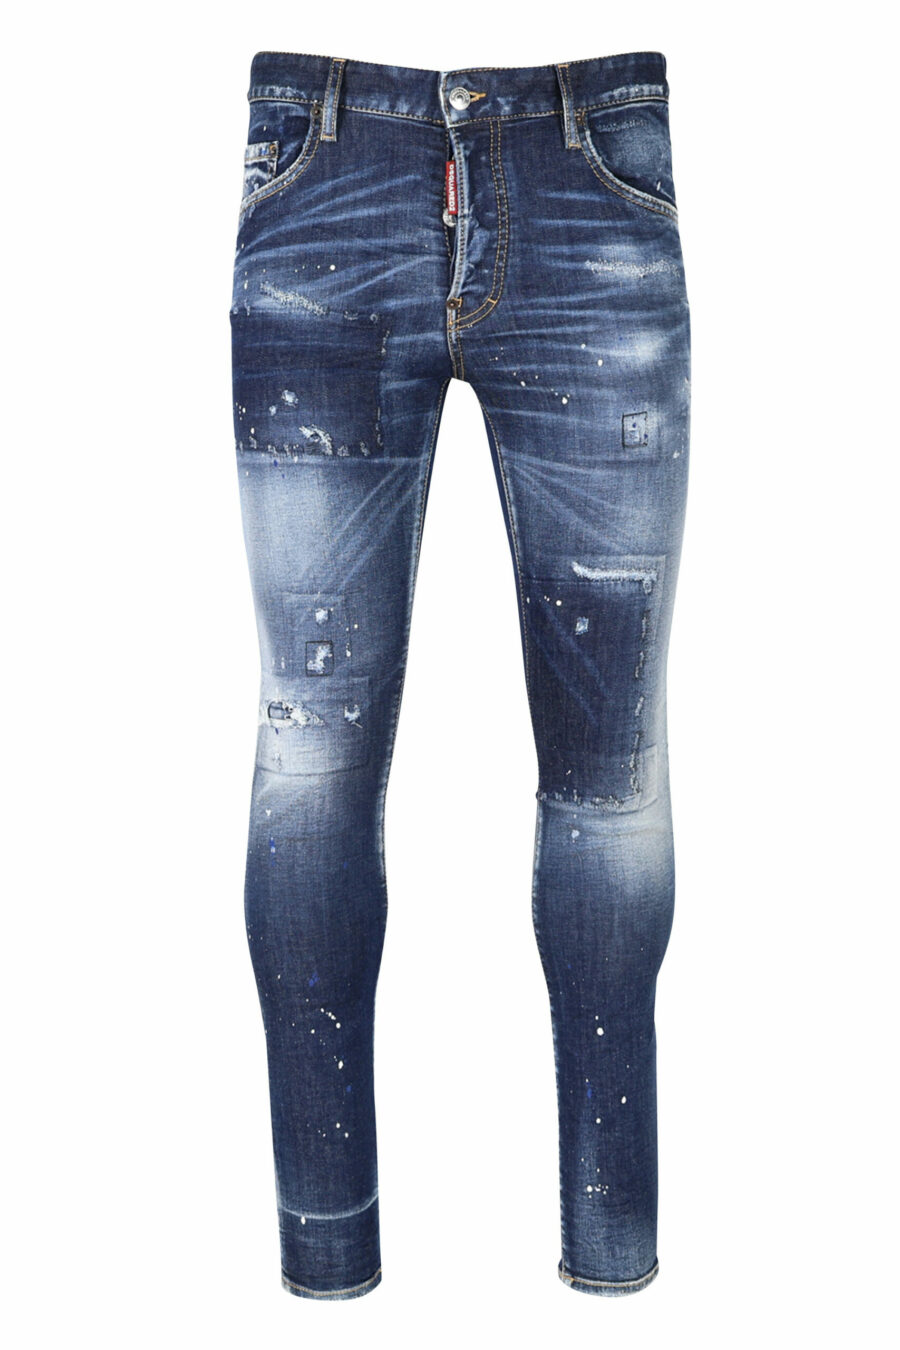 Blaue "super twinky jean" Jeans mit Patch und ausgefranst - 8054148104863 skaliert